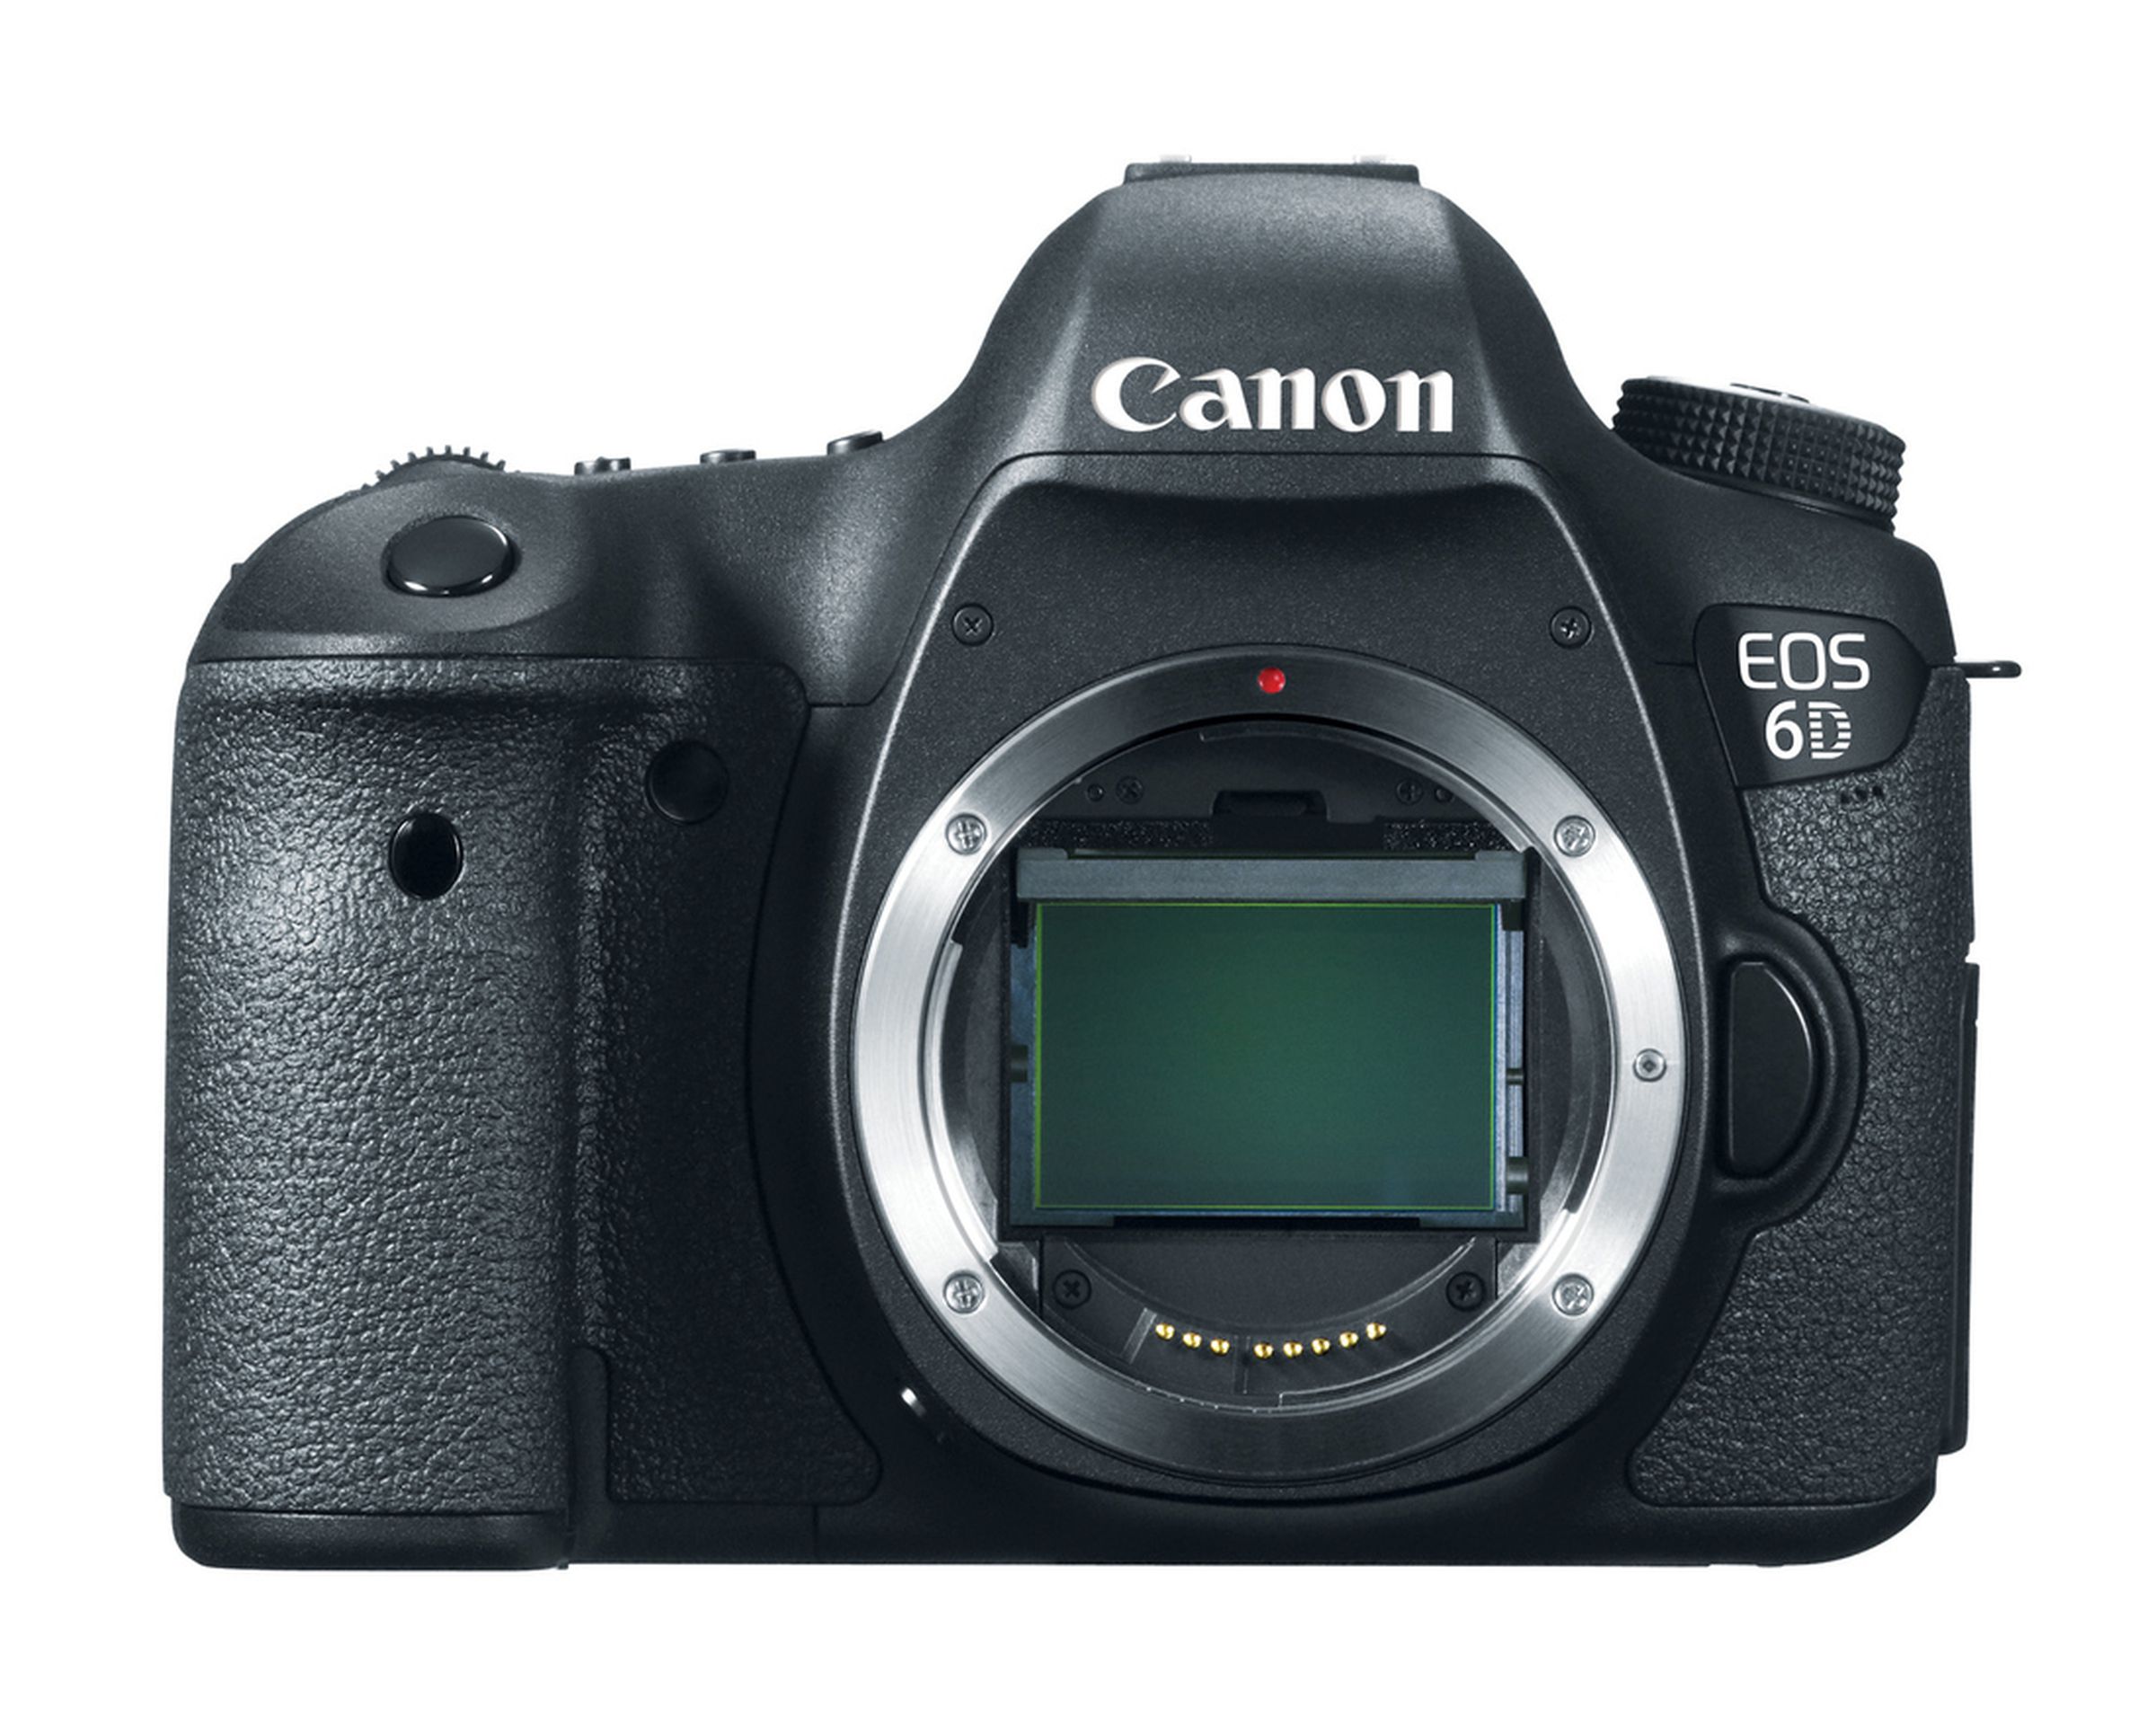 Canon EOS 6D press photos